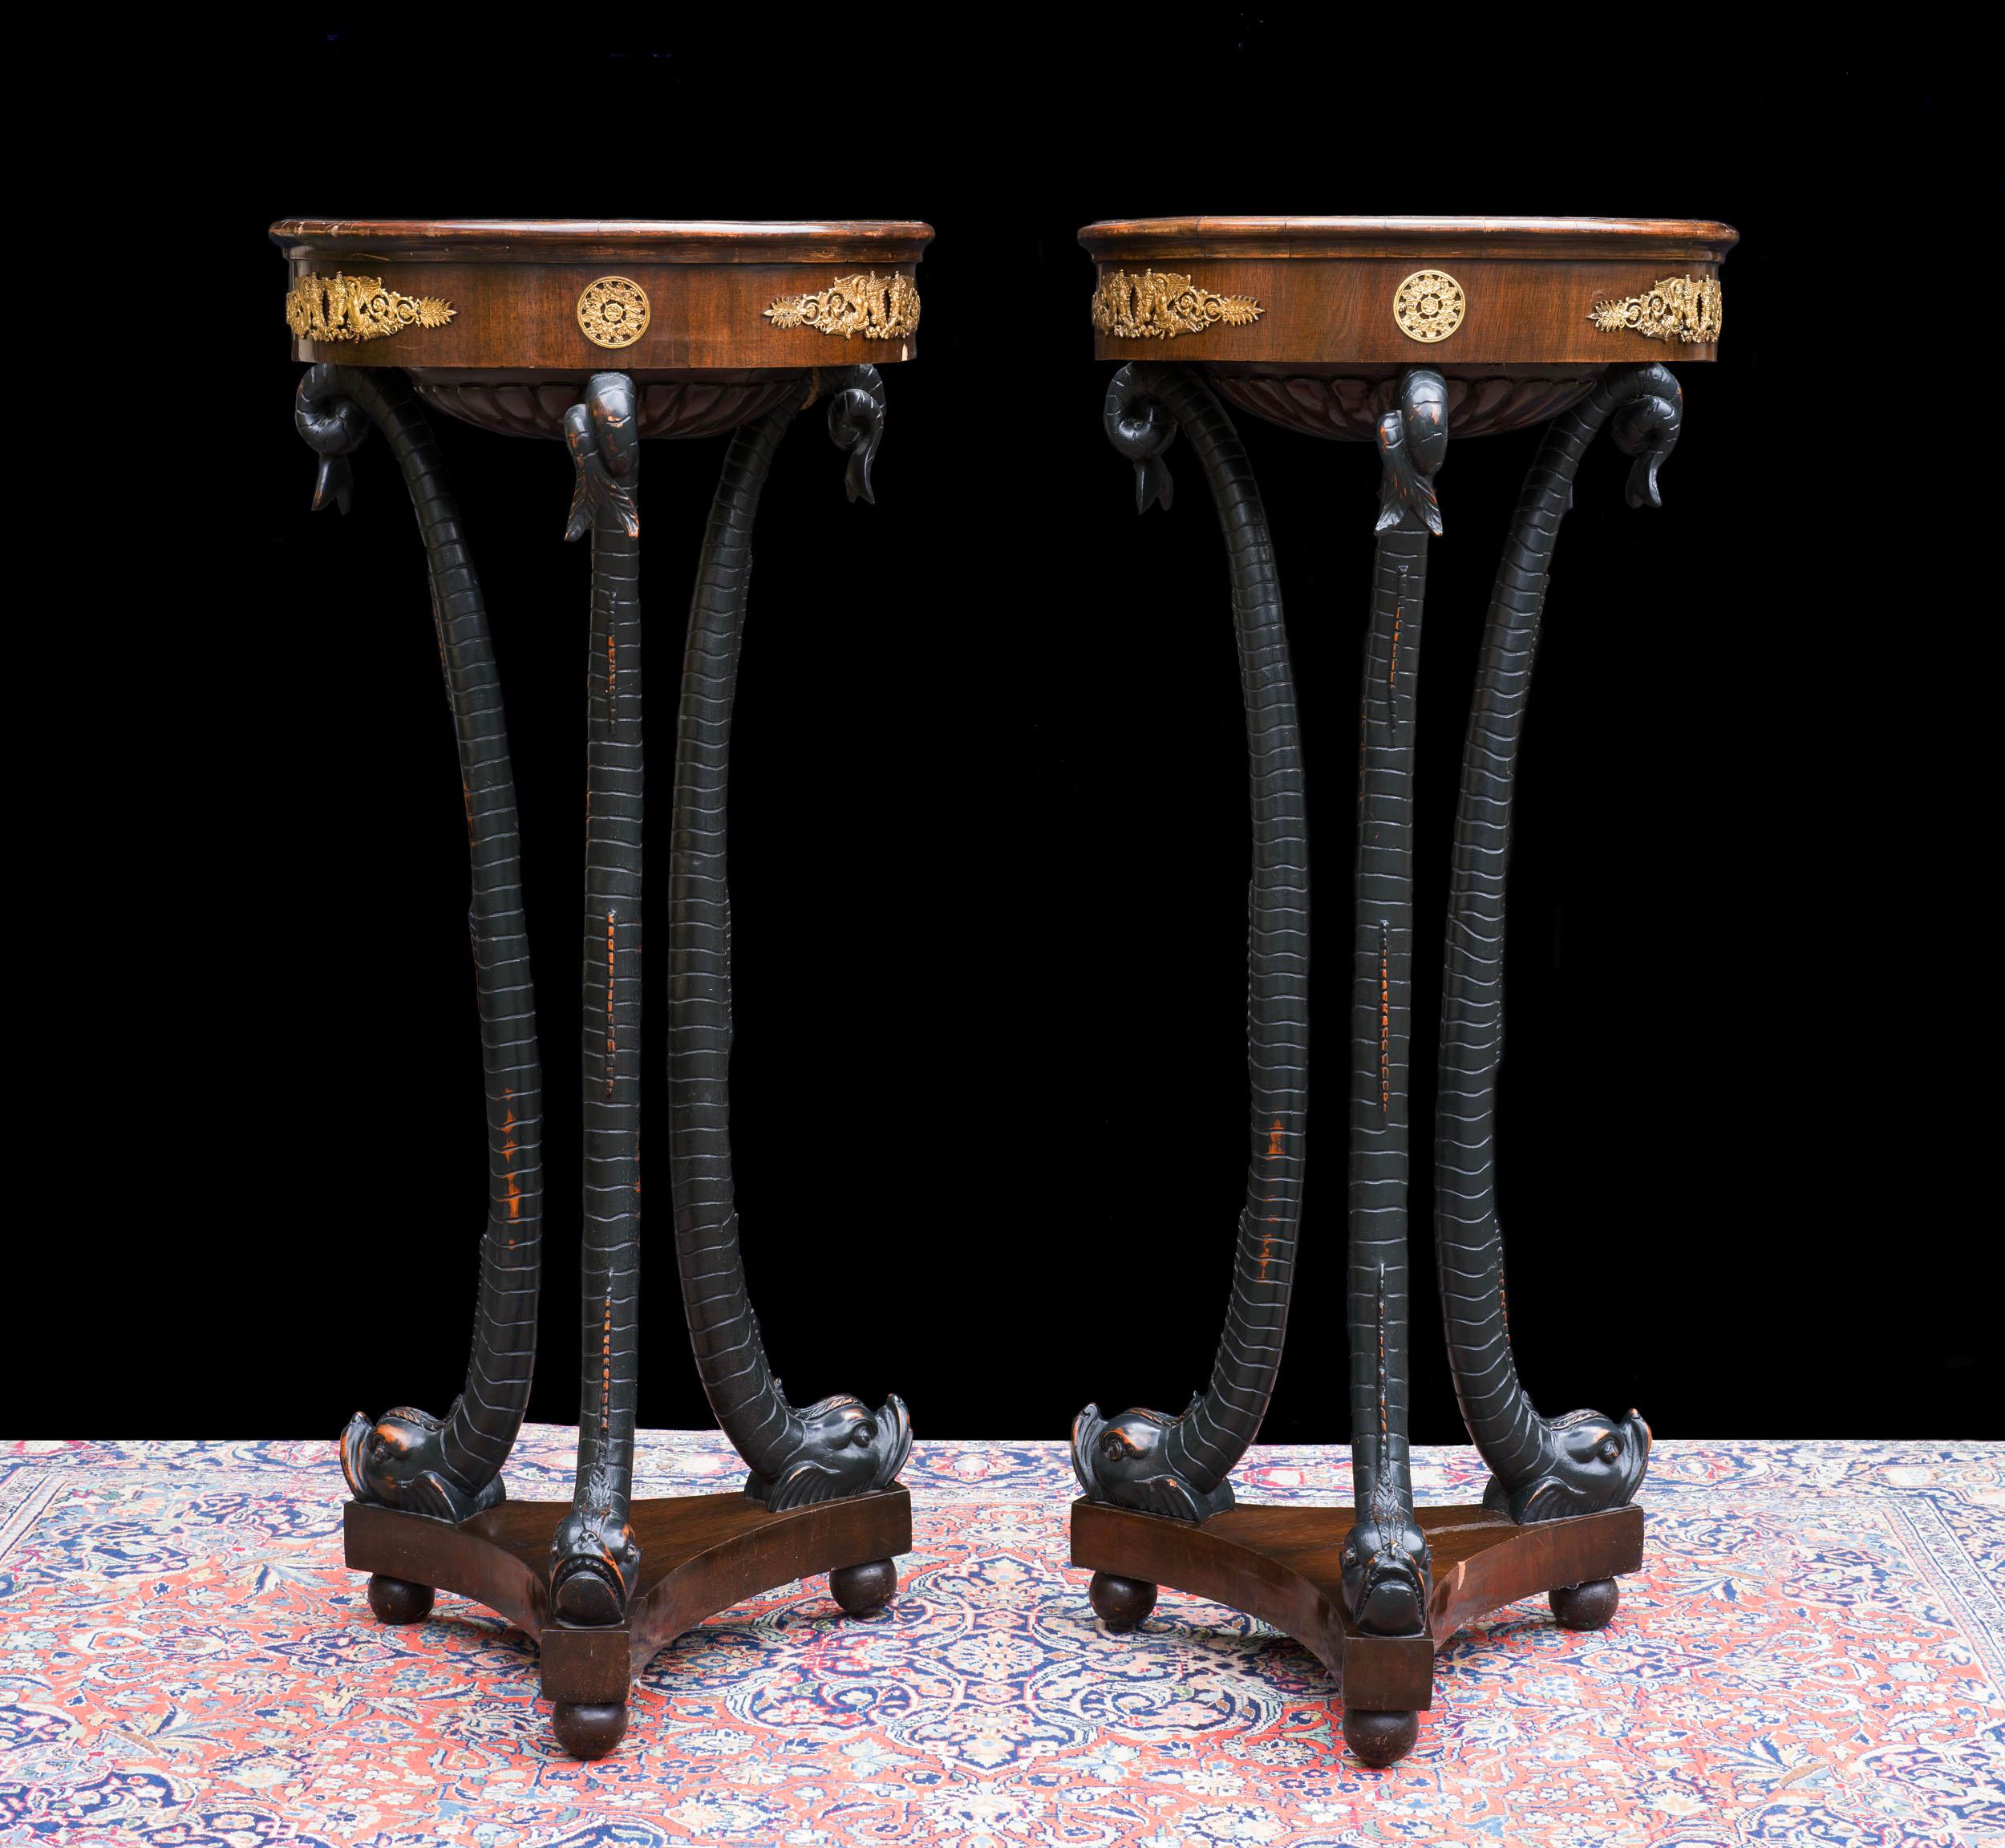 Ein seltenes Paar französischer Fackeltische oder Gueridon-Tische, mit eingelassenen Marmorplatten über einer ormolierten, furnierten Platte, über einem dreiförmigen Sockel, der Beine trägt, die als Delphine im römischen Stil modelliert sind, mit